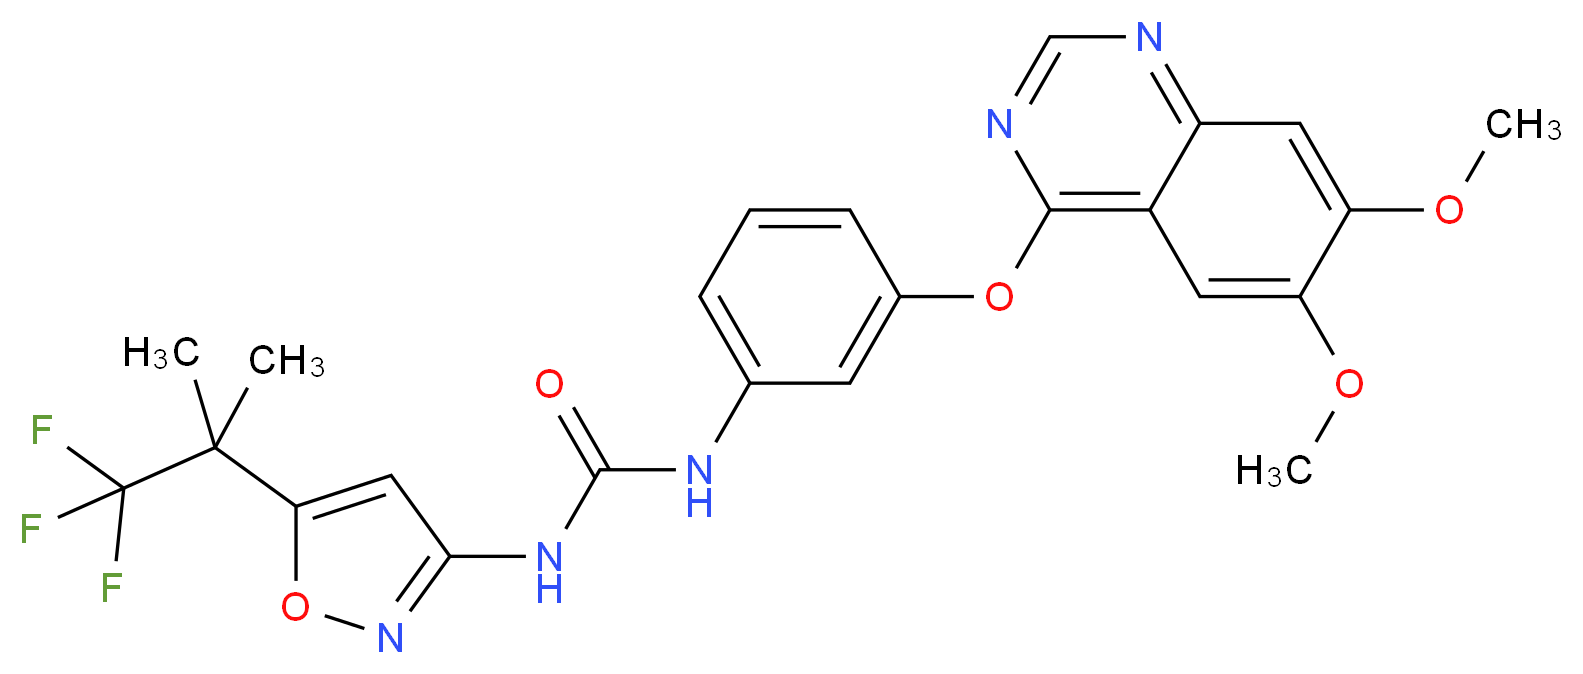 1188910-76-0 molecular structure